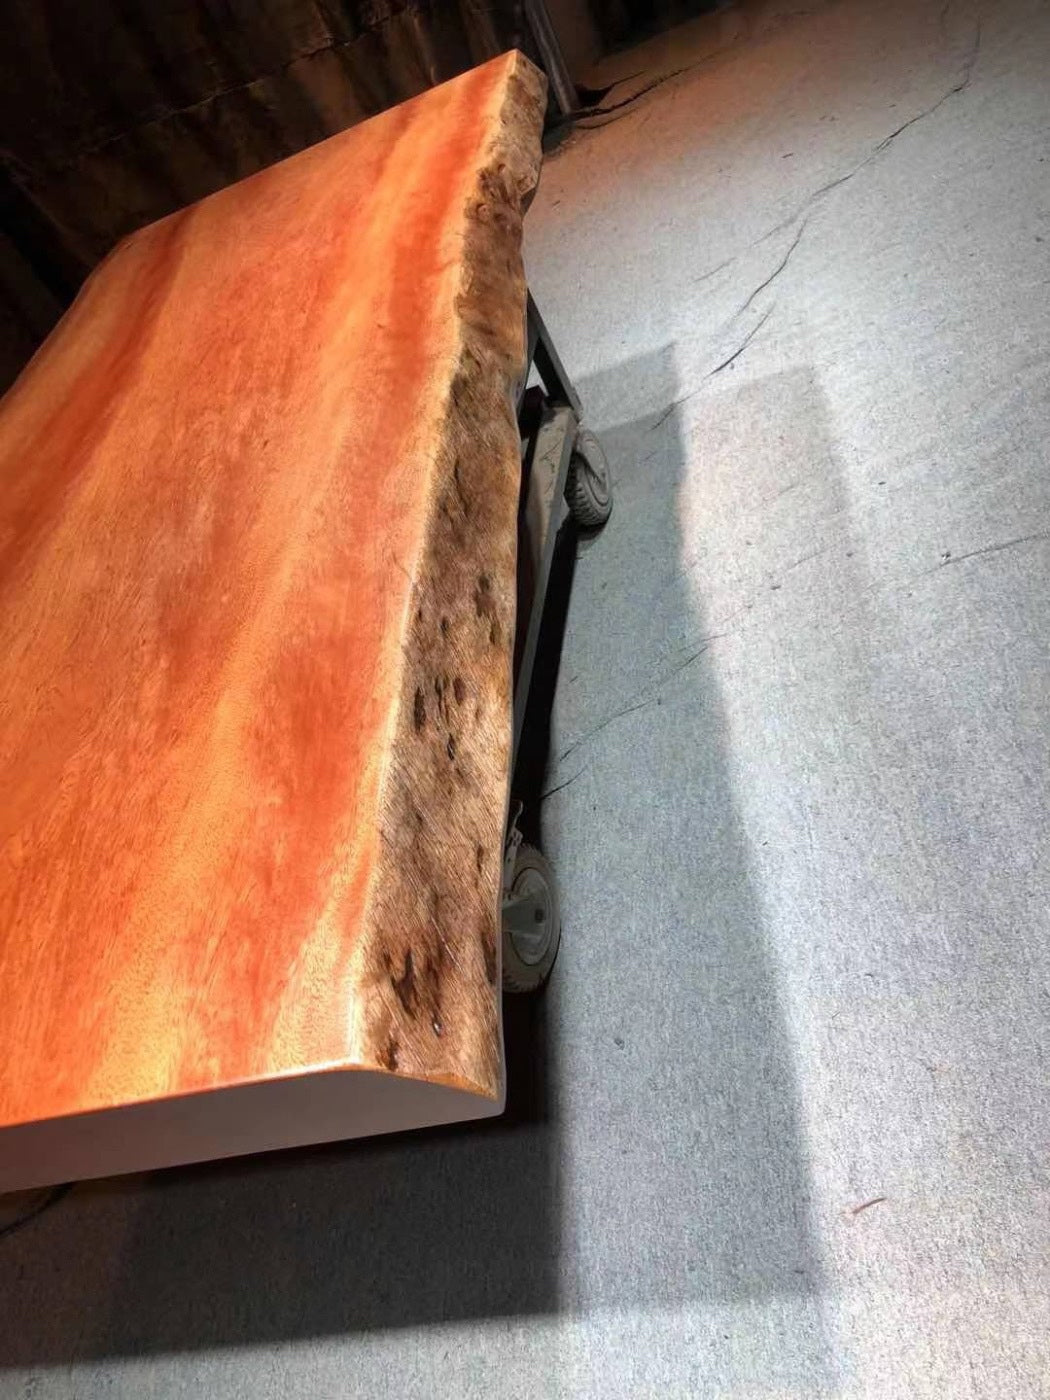 طاولة مدخل لوح خشب Bintangor، طاولة لوح حافة حية، بلاطة خشب بابوا غينيا الجديدة